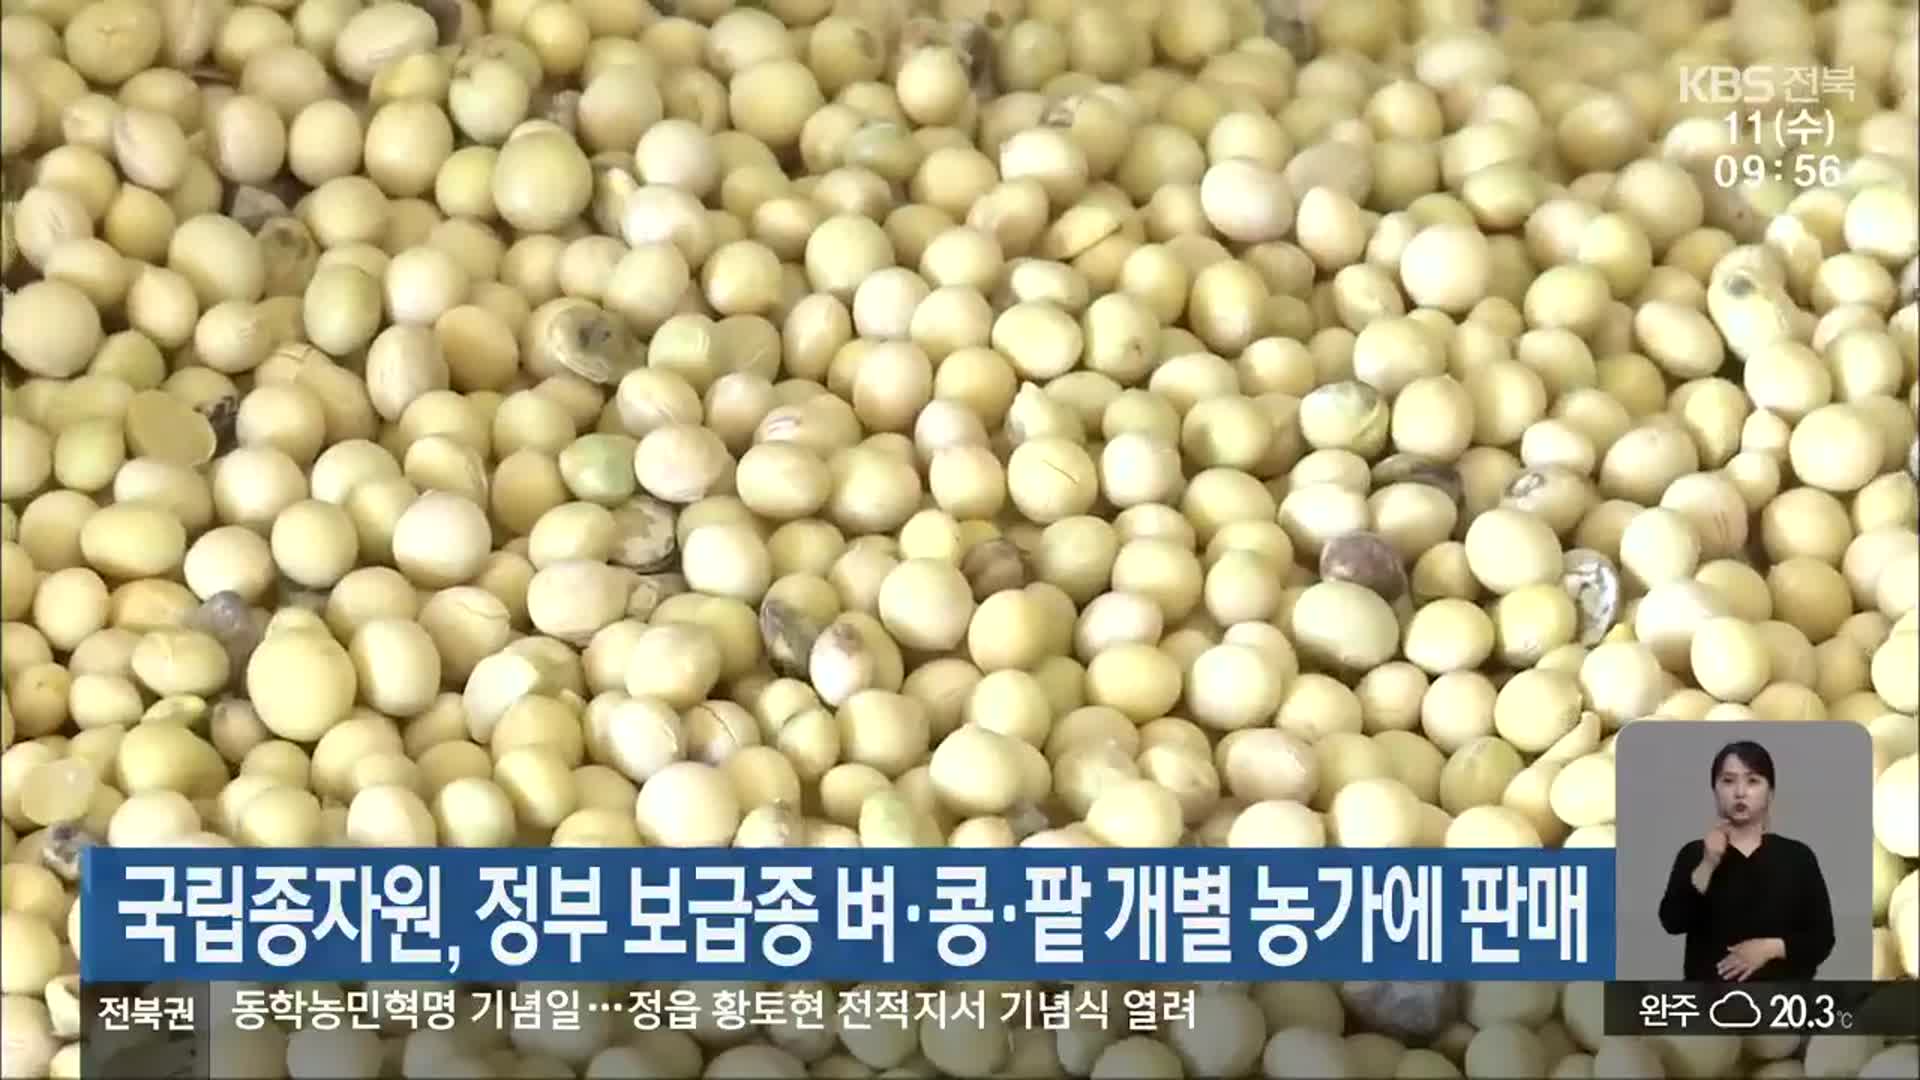 국립종자원, 정부 보급종 벼·콩·팥 개별 농가에 판매